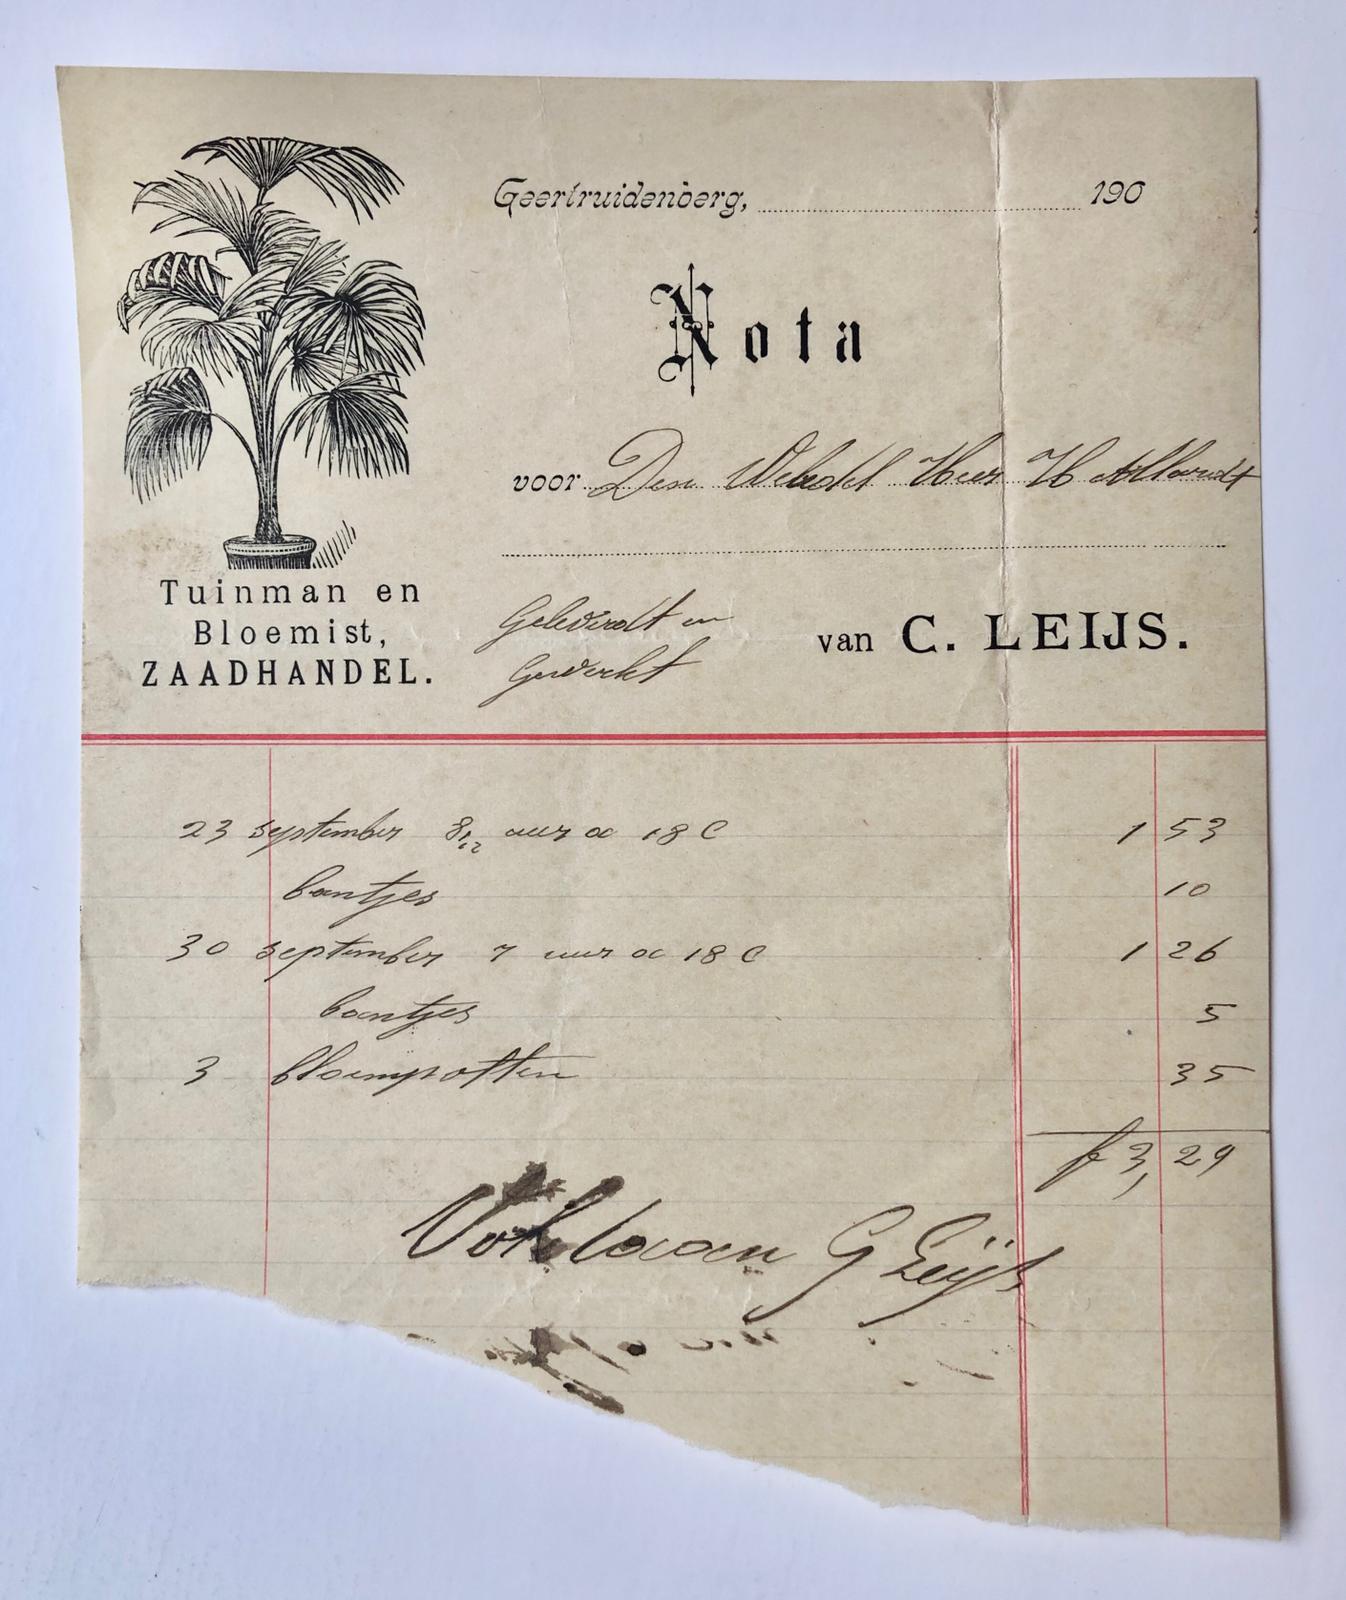 [Receipt, gardener, 1910] Nota van tuinman C. Leijs te Geertruijdenberg, Tuinman en bloemist, zaadhandel. ca. 1910.